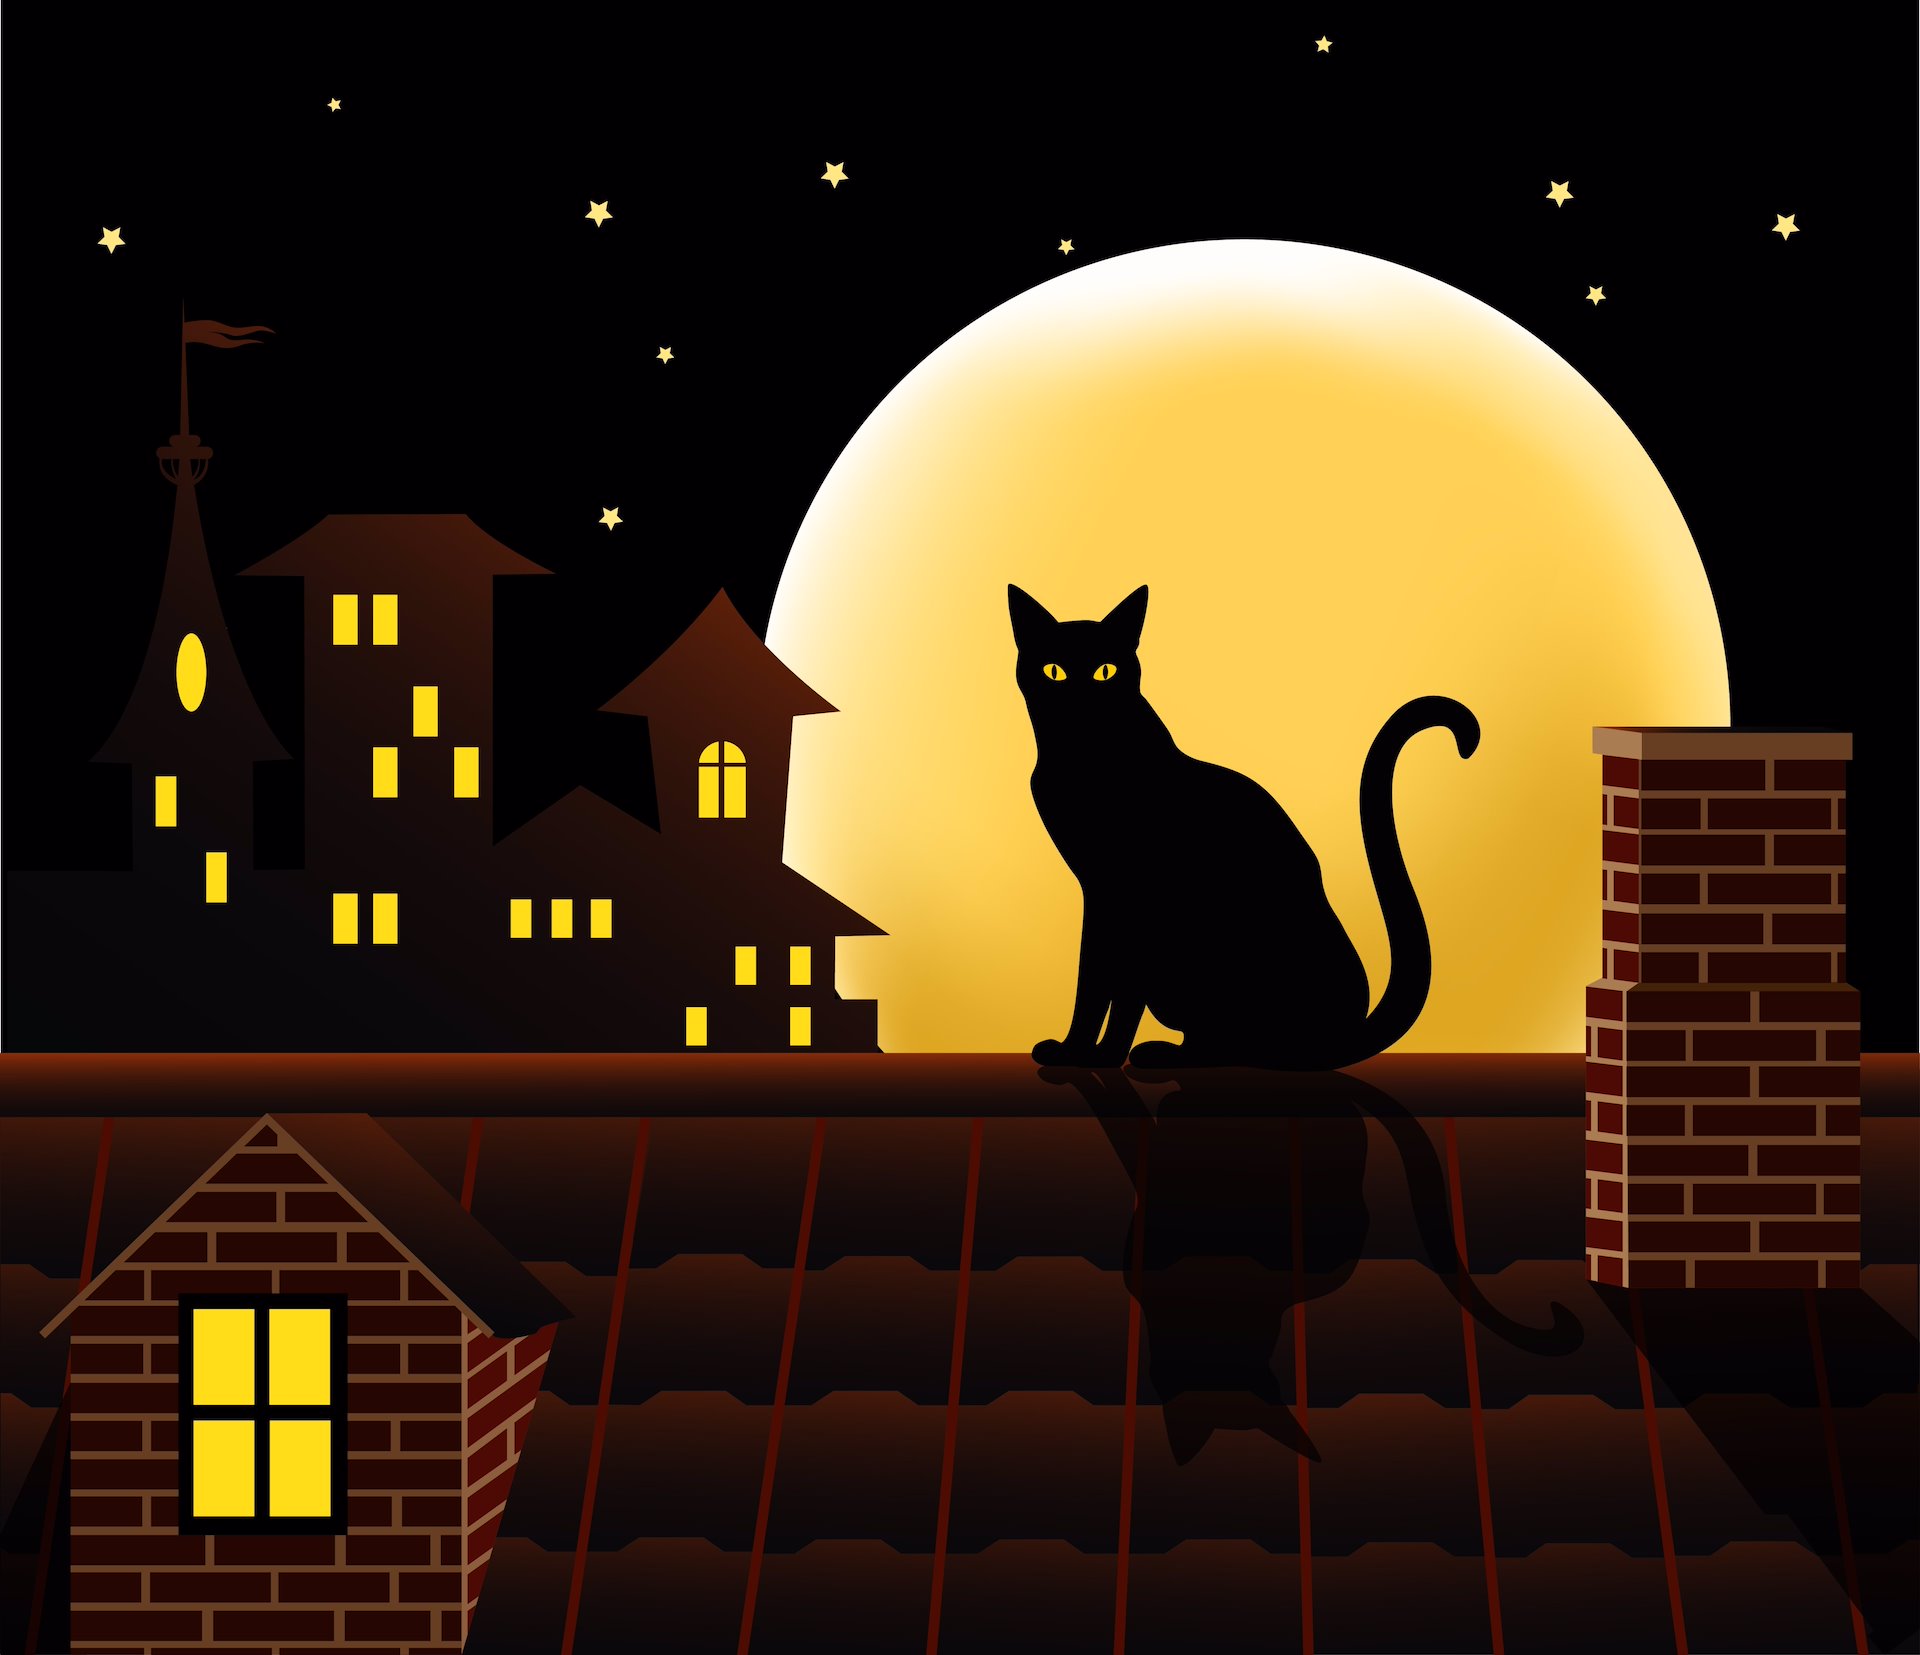 Mythe : les chats noirs portent-ils vraiment malheur?